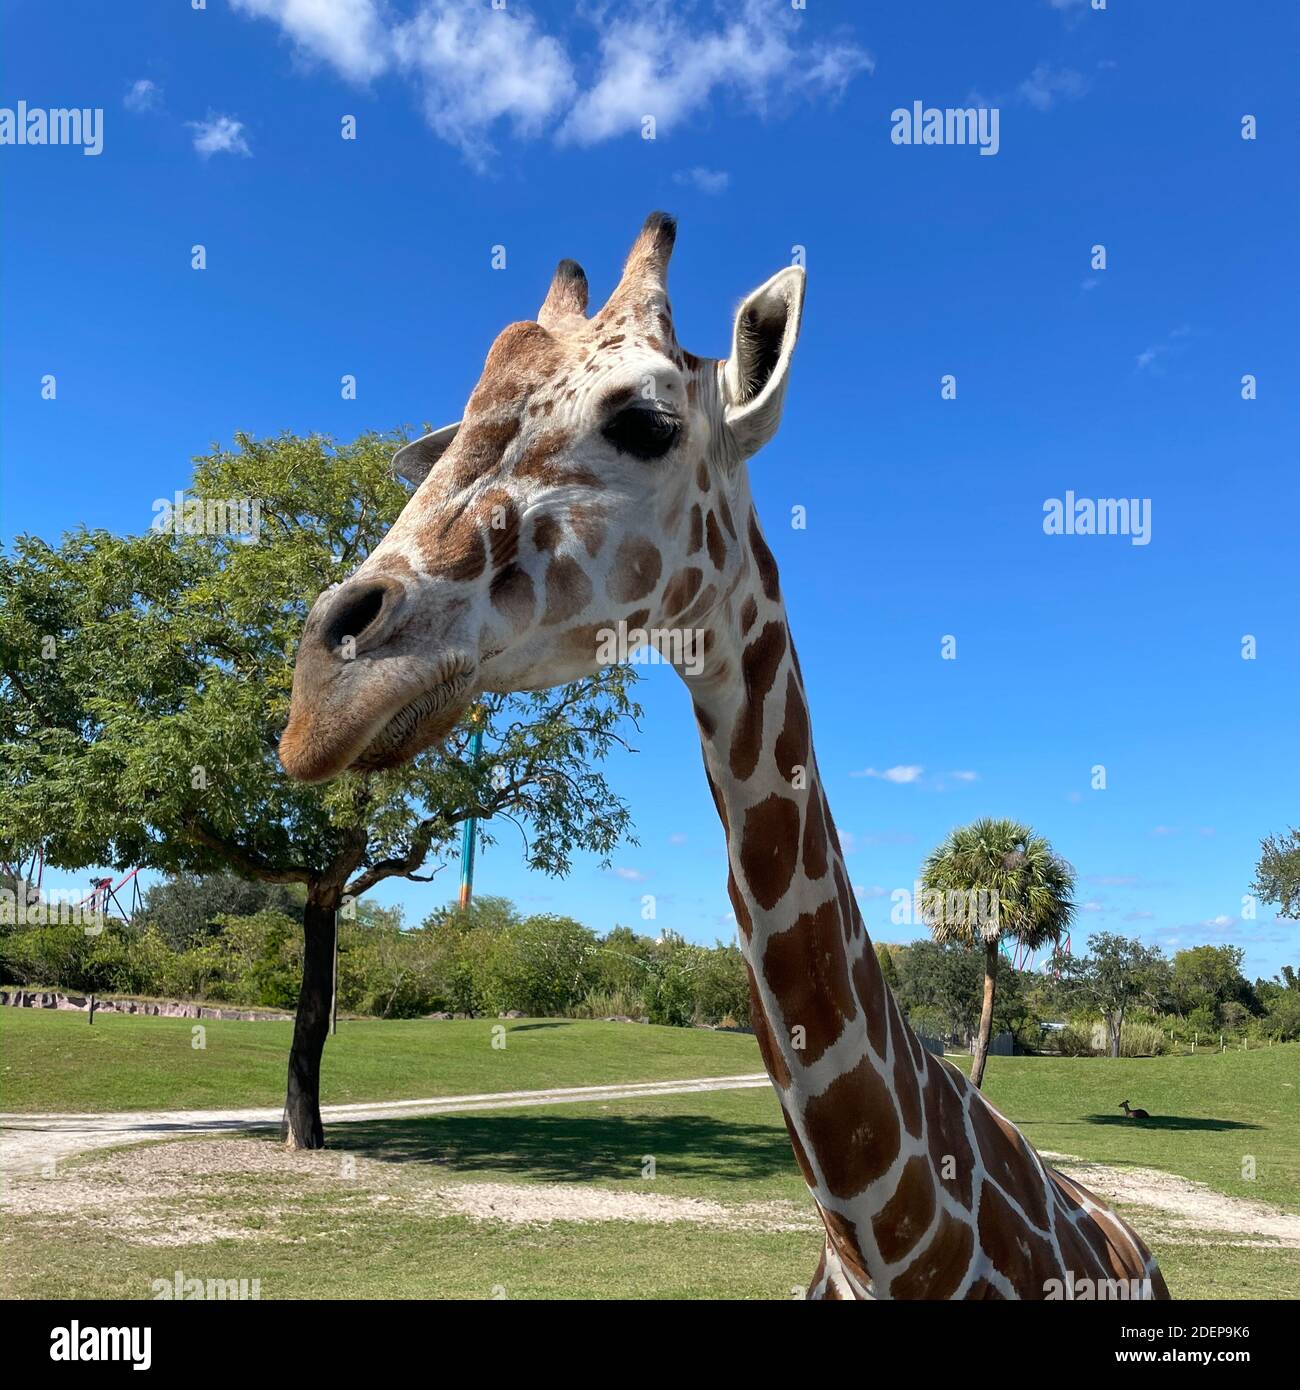 Eine Nahaufnahme einer Giraffe in einem Zoo, der darauf wartet, dass Besucher ihn mit Salat füttern. Stockfoto